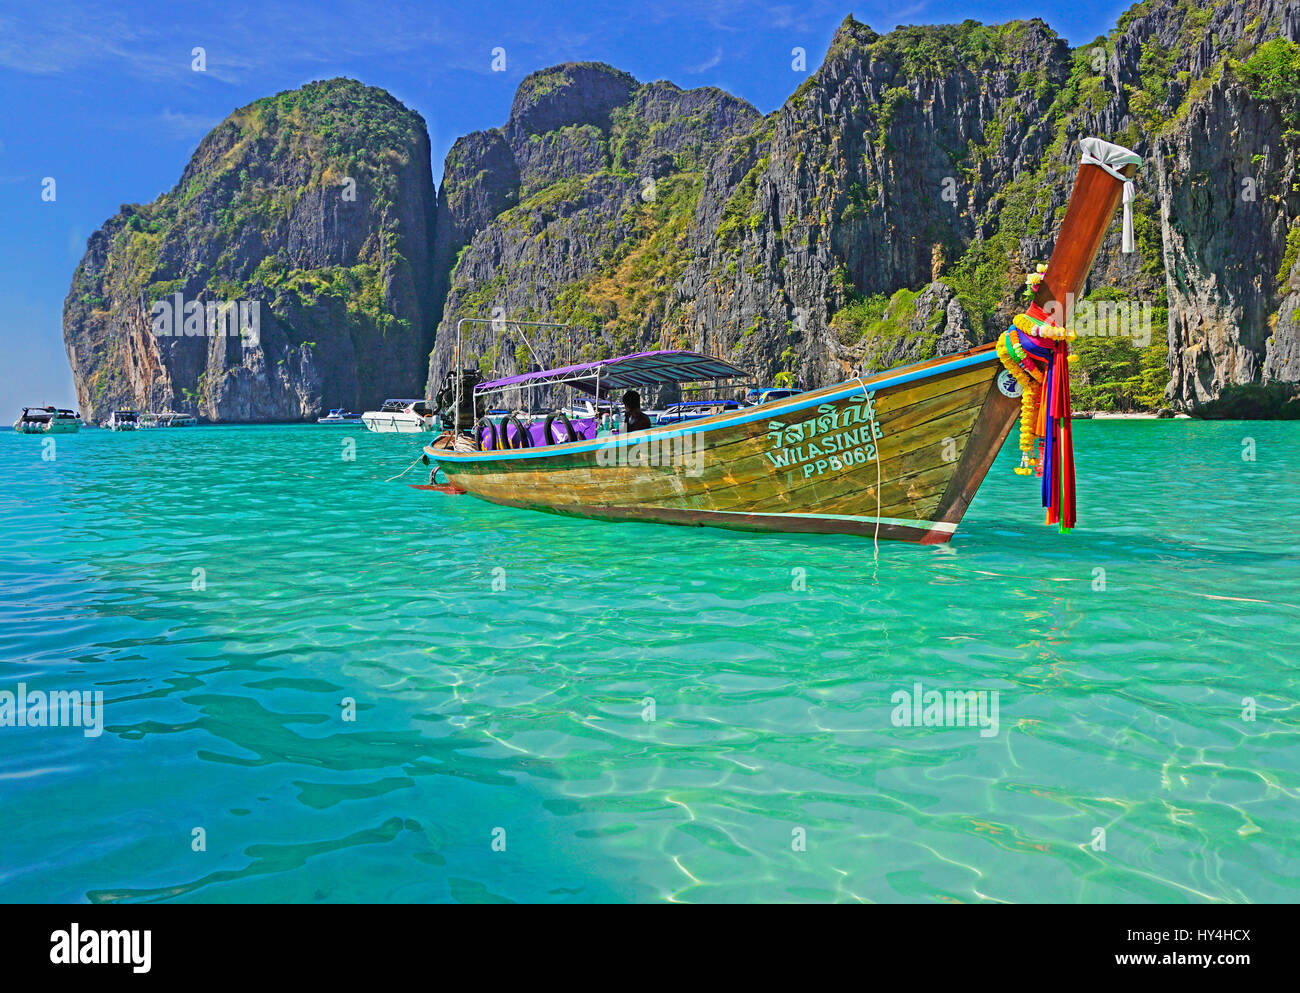 Thai long-tail boat decorated with sashes at Maya Bay of Phi Phi Leh island, Thailand. Stock Photo